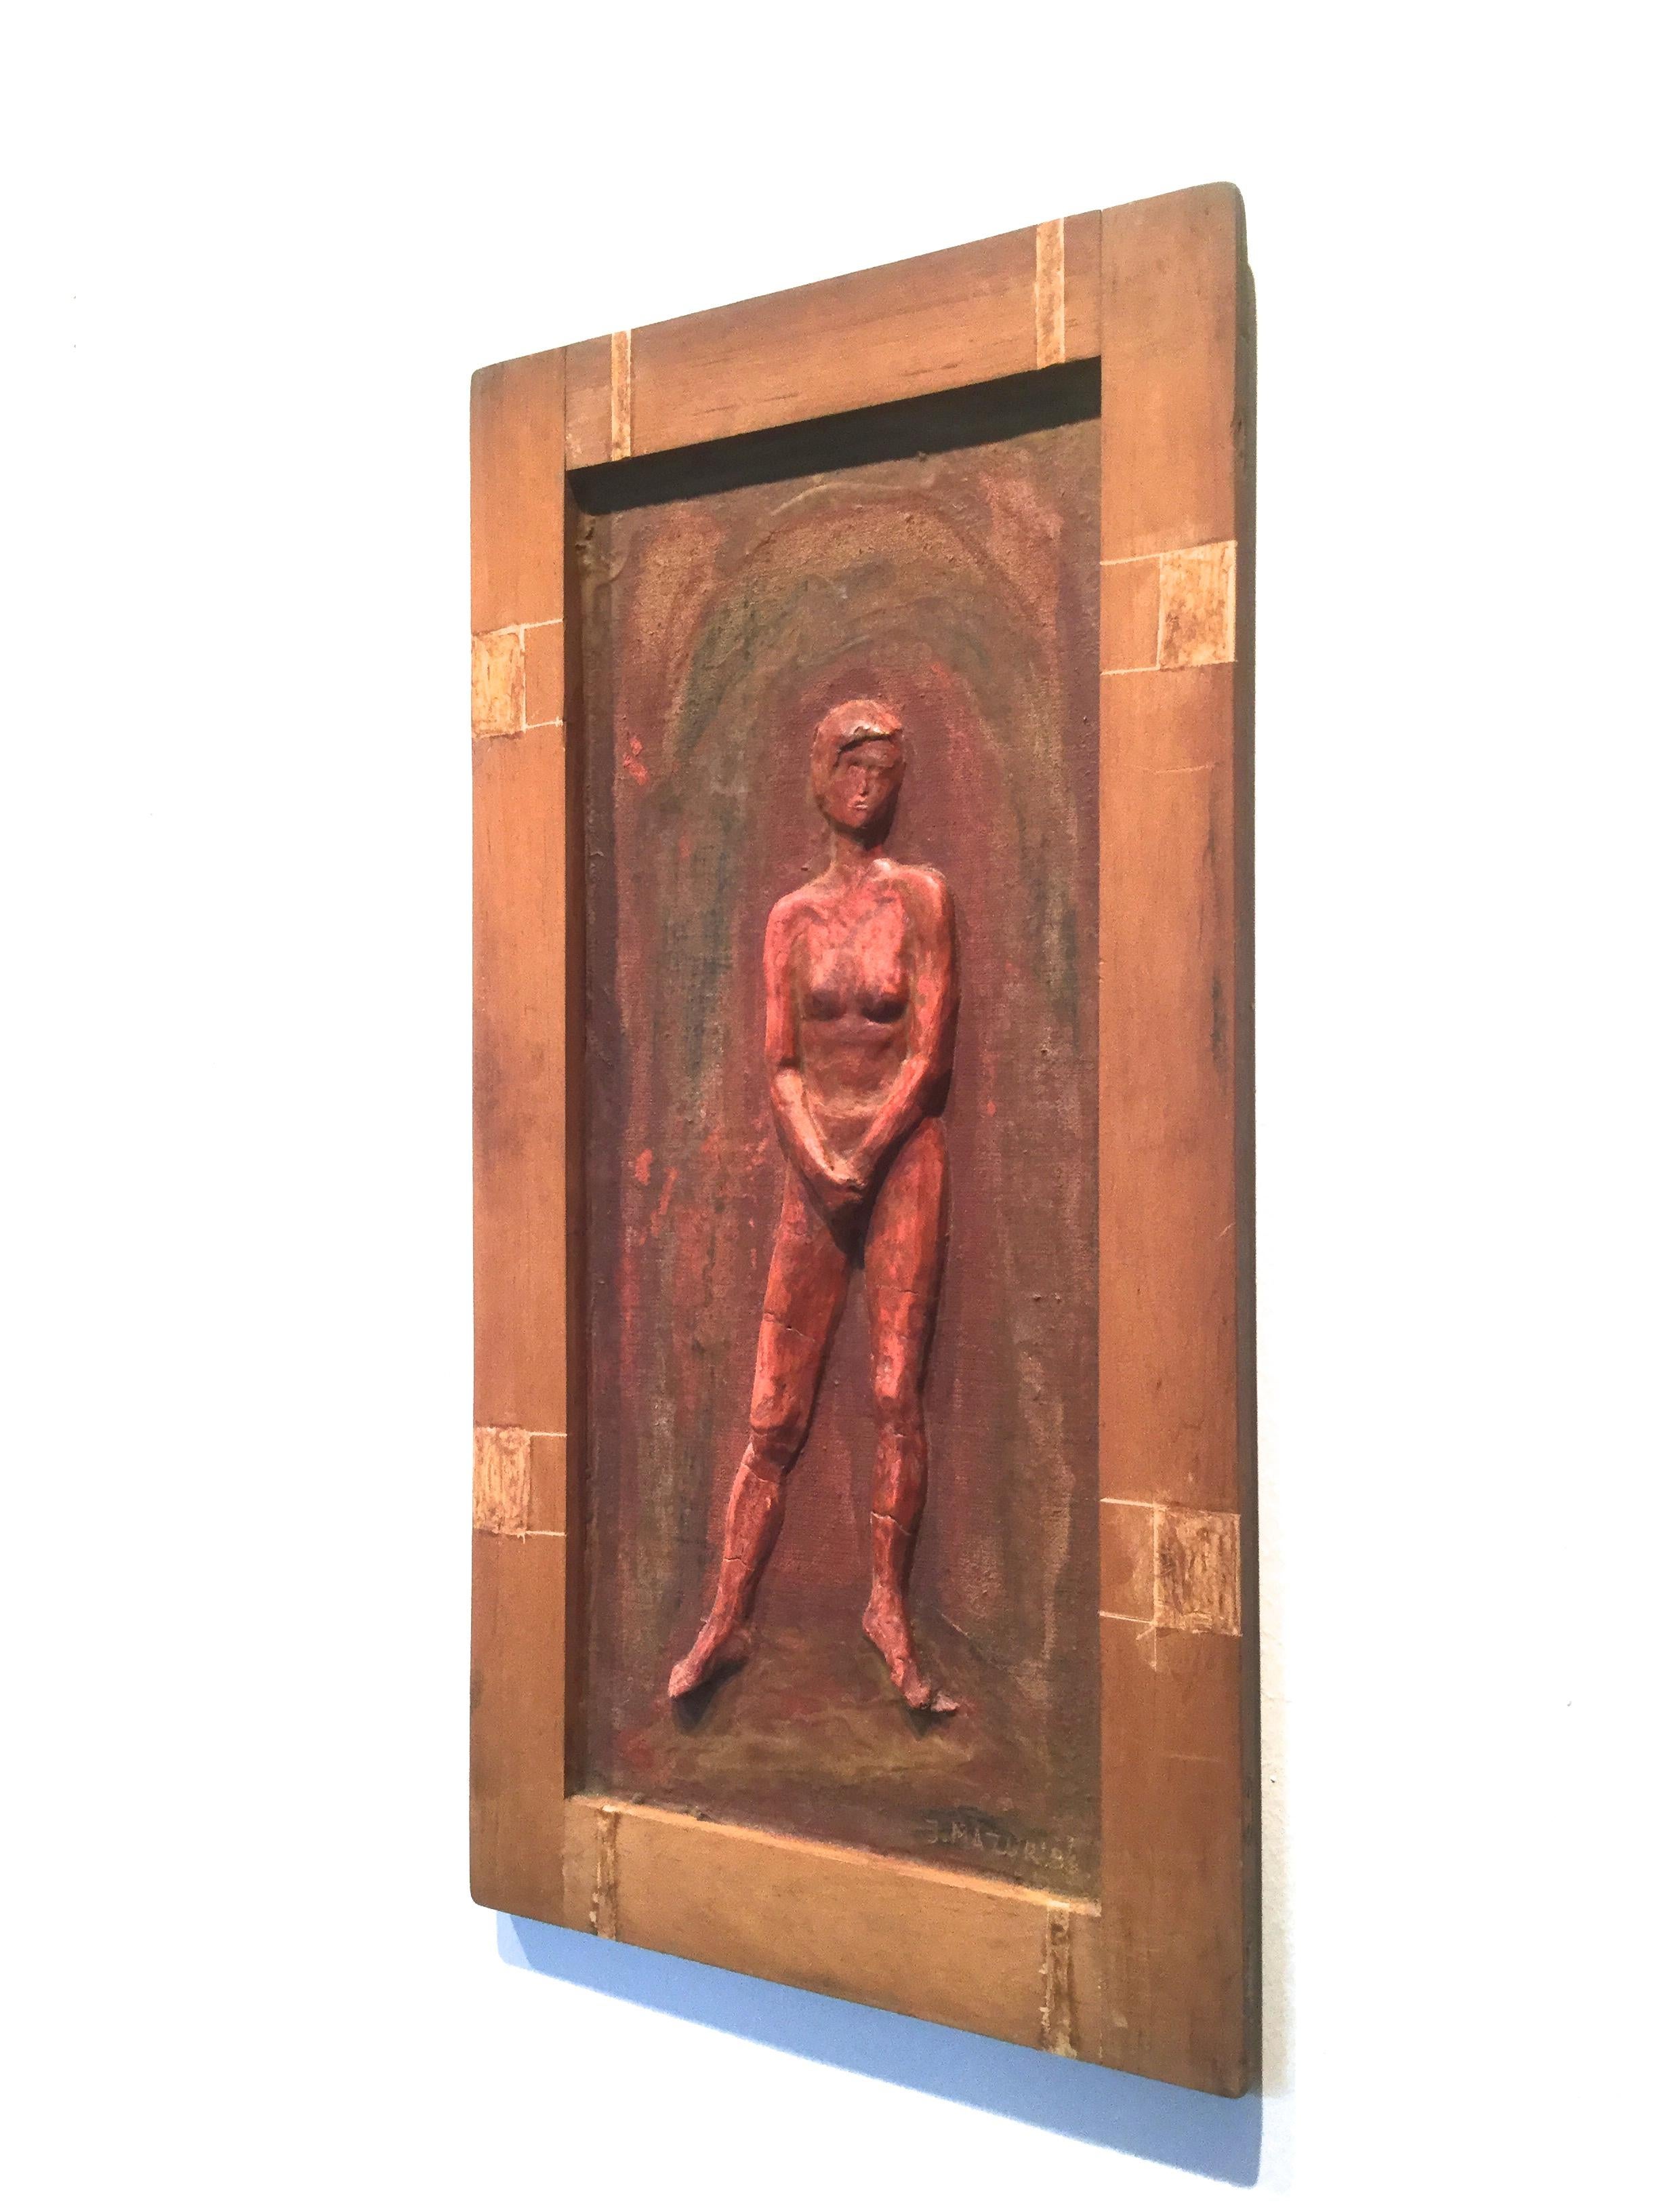 Nudefarbene stehende Frau -  Relief-Skulptur